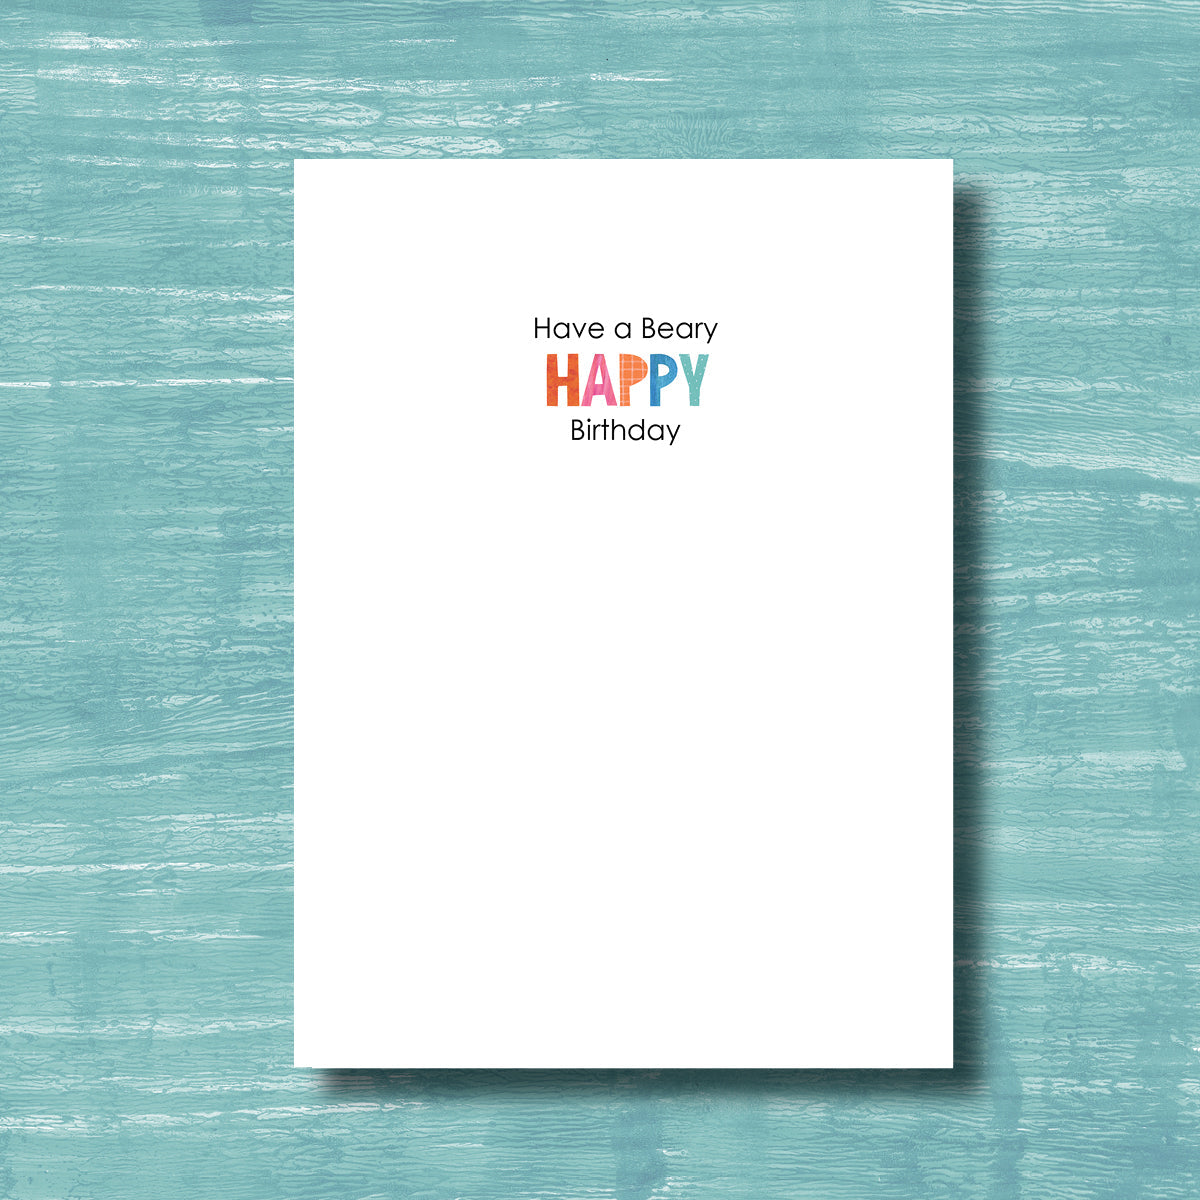 A Beary Happy Birthday - Birthday Card